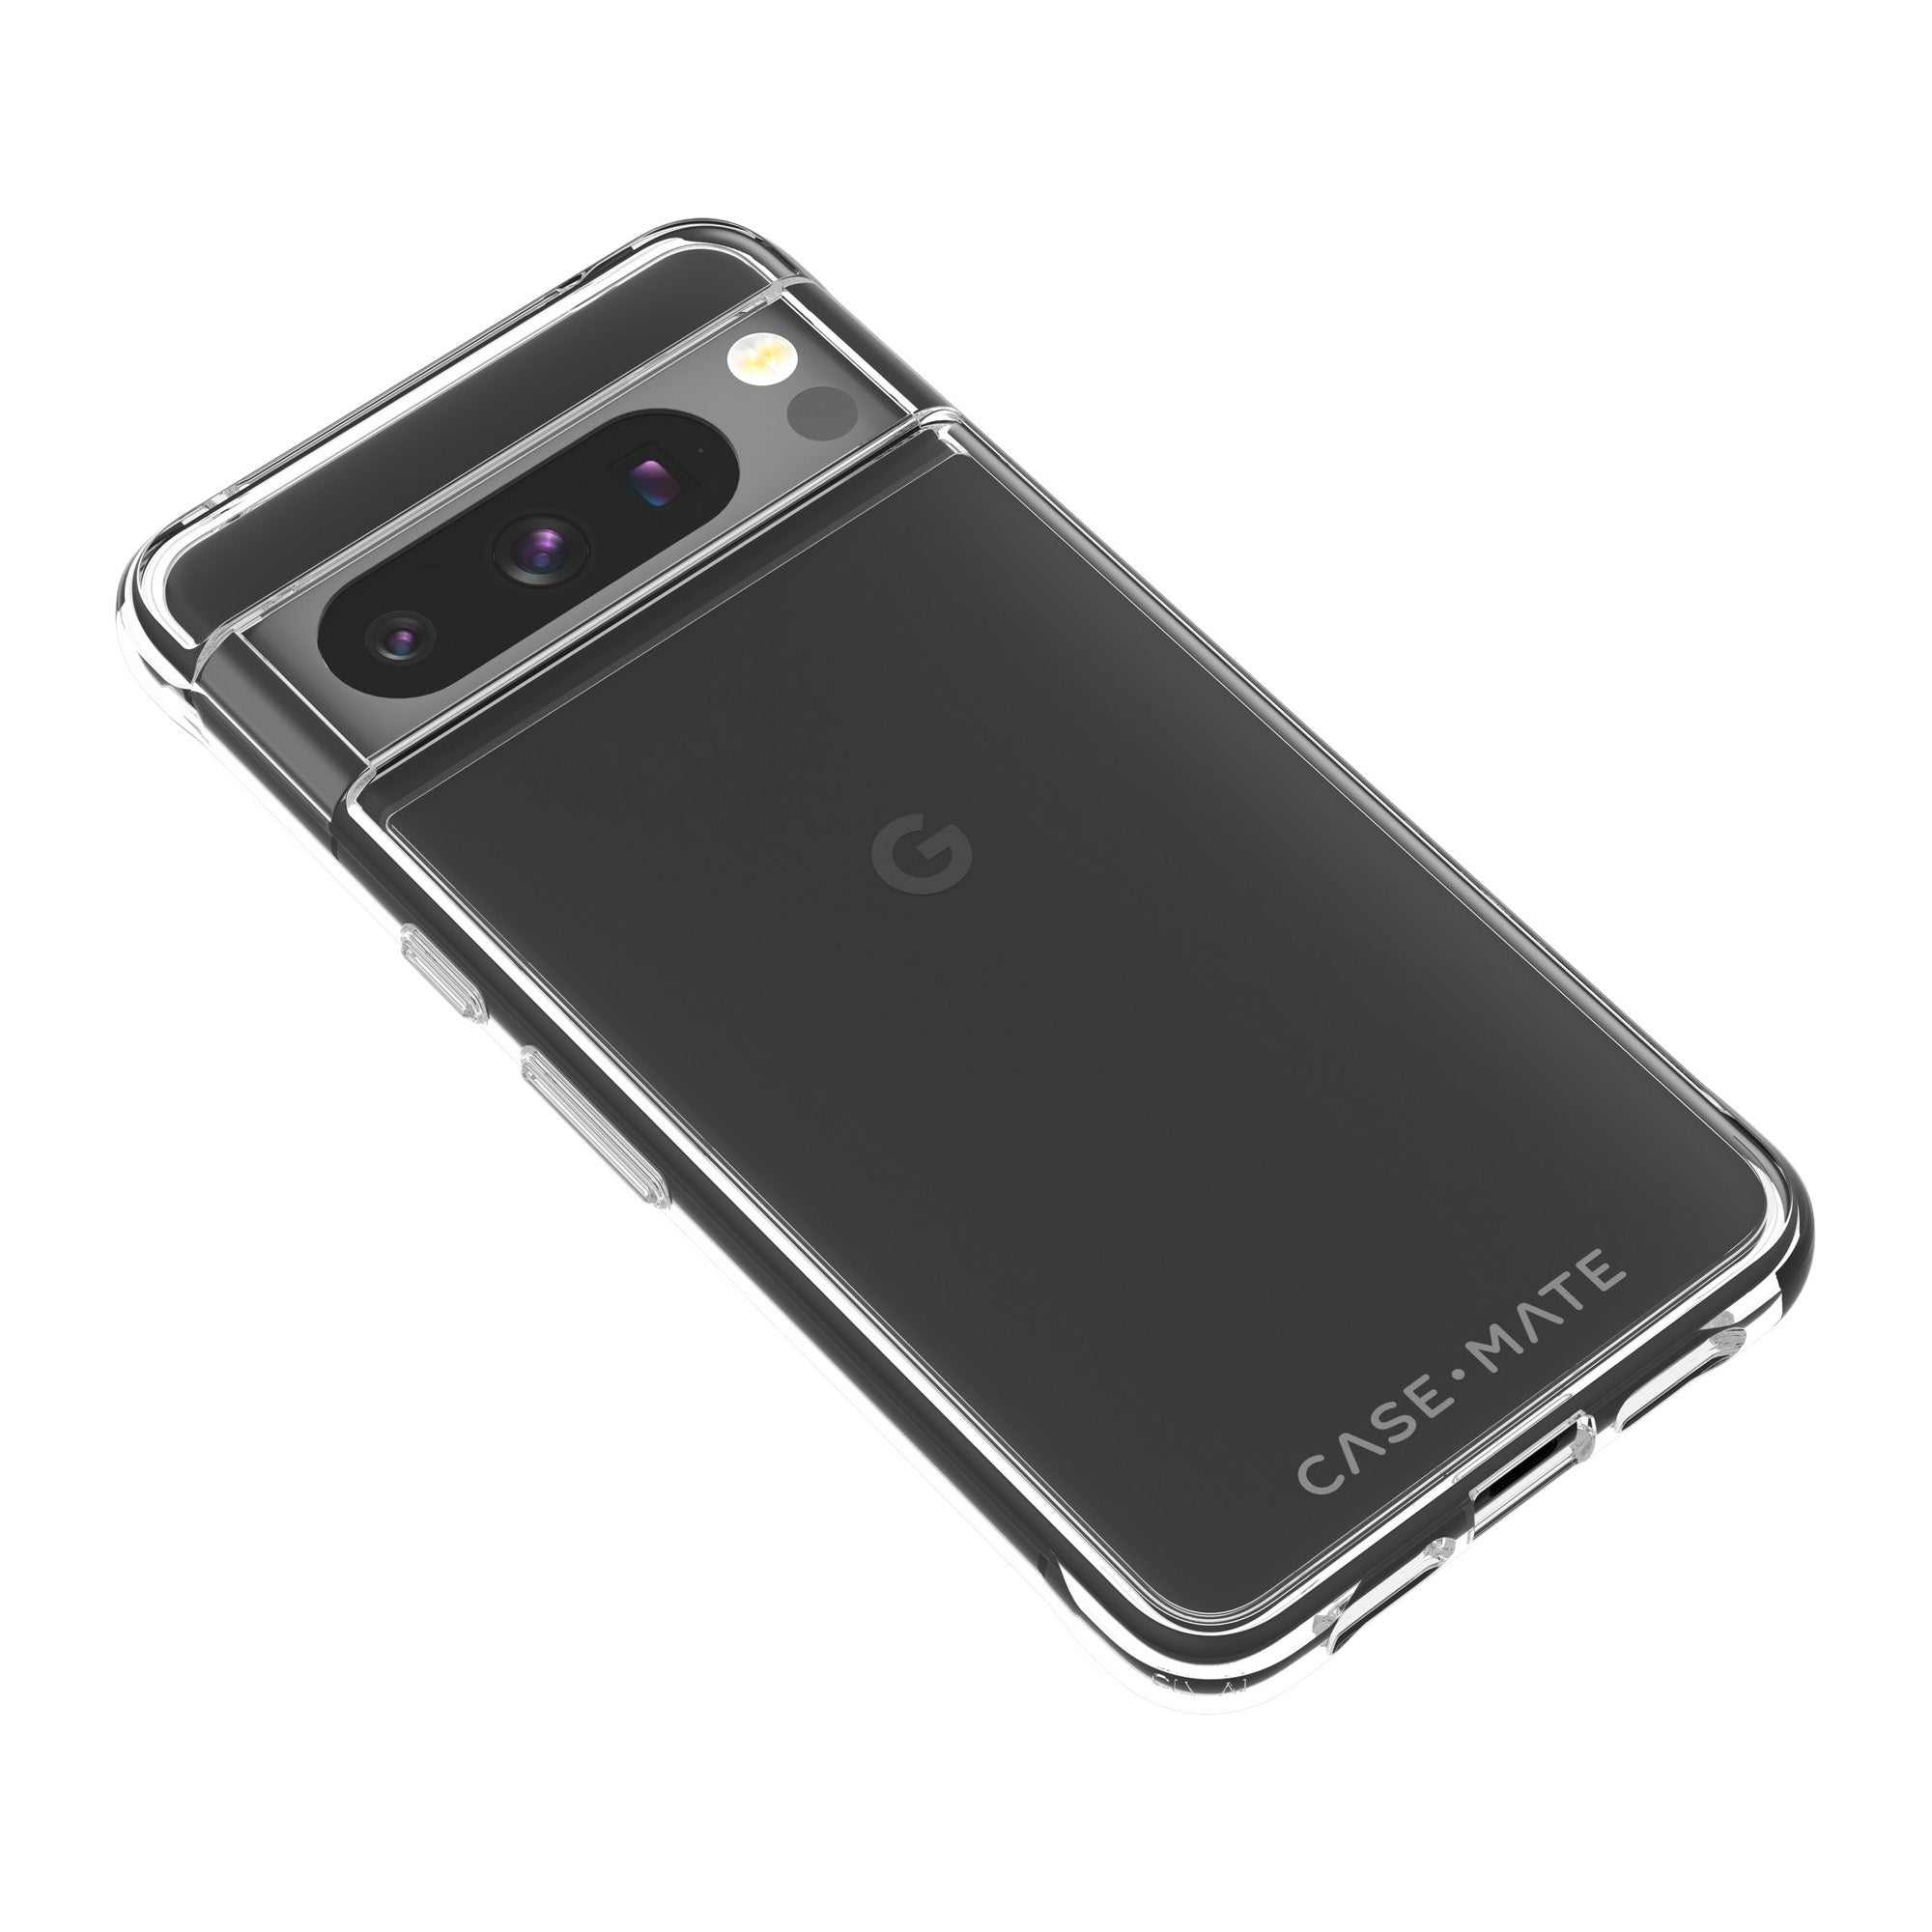 Google Pixel 8 Pro Case-Mate Tough Case - Clear - 15-12083